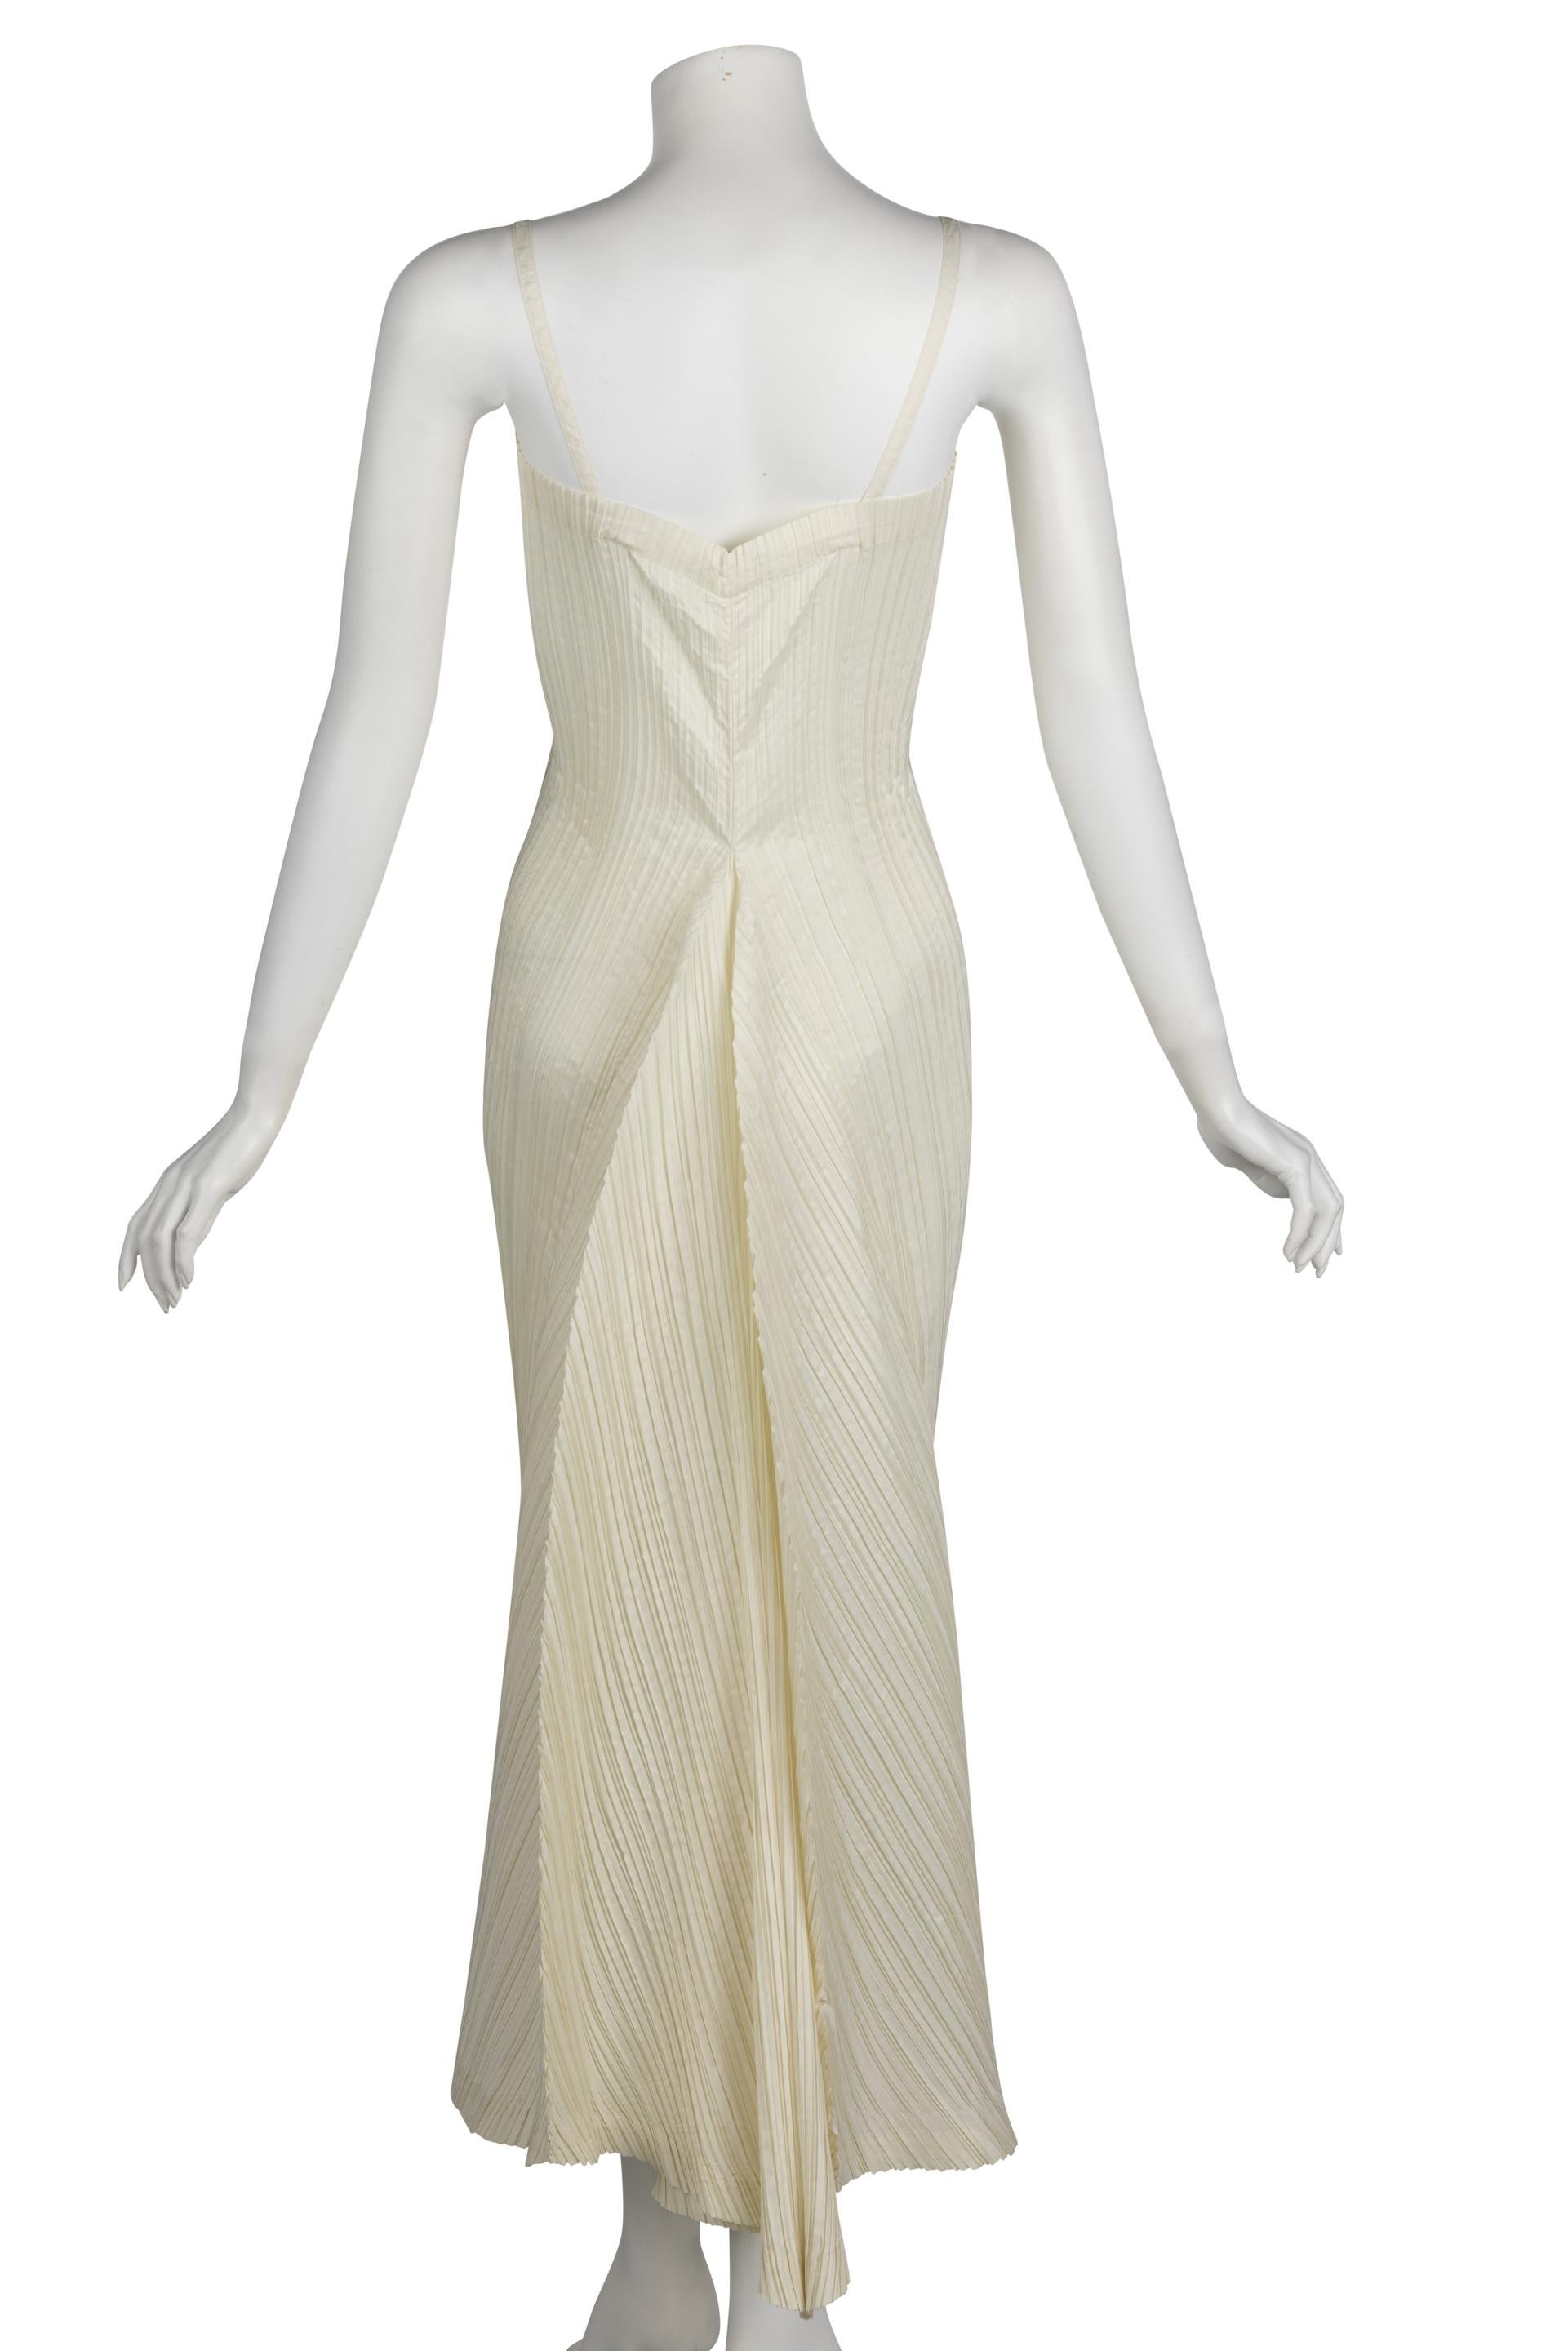  Vintage Issey Miyake Ivory Sleeveless Sculptural Dress Museum Held, 1980s  3